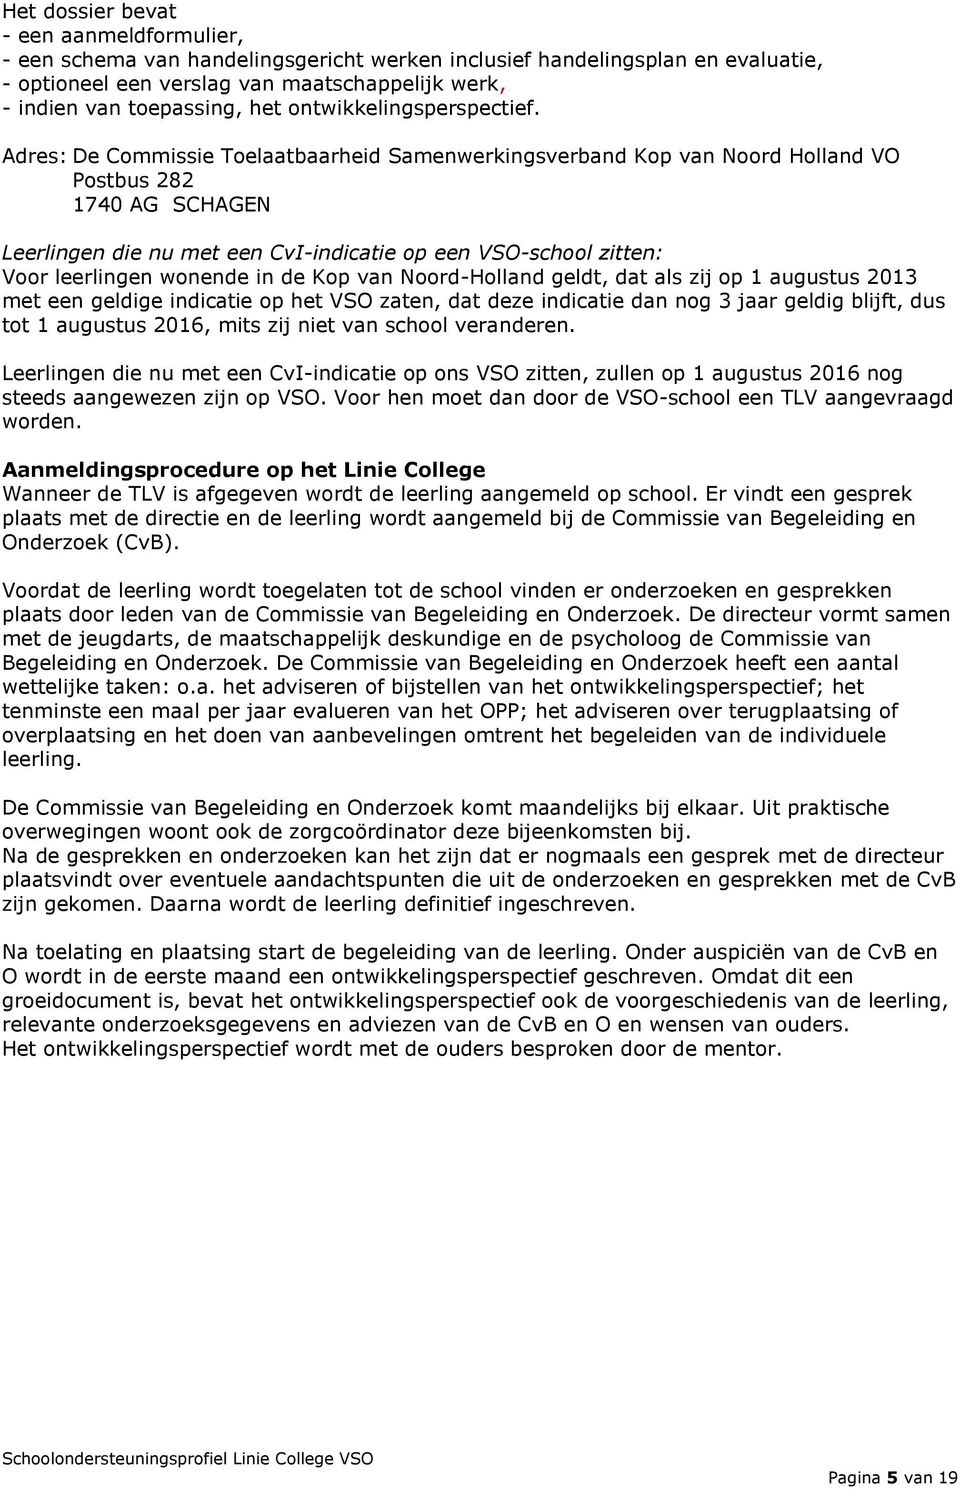 Adres: De Commissie Toelaatbaarheid Samenwerkingsverband Kop van Noord Holland VO Postbus 282 1740 AG SCHAGEN Leerlingen die nu met een CvI-indicatie op een VSO-school zitten: Voor leerlingen wonende